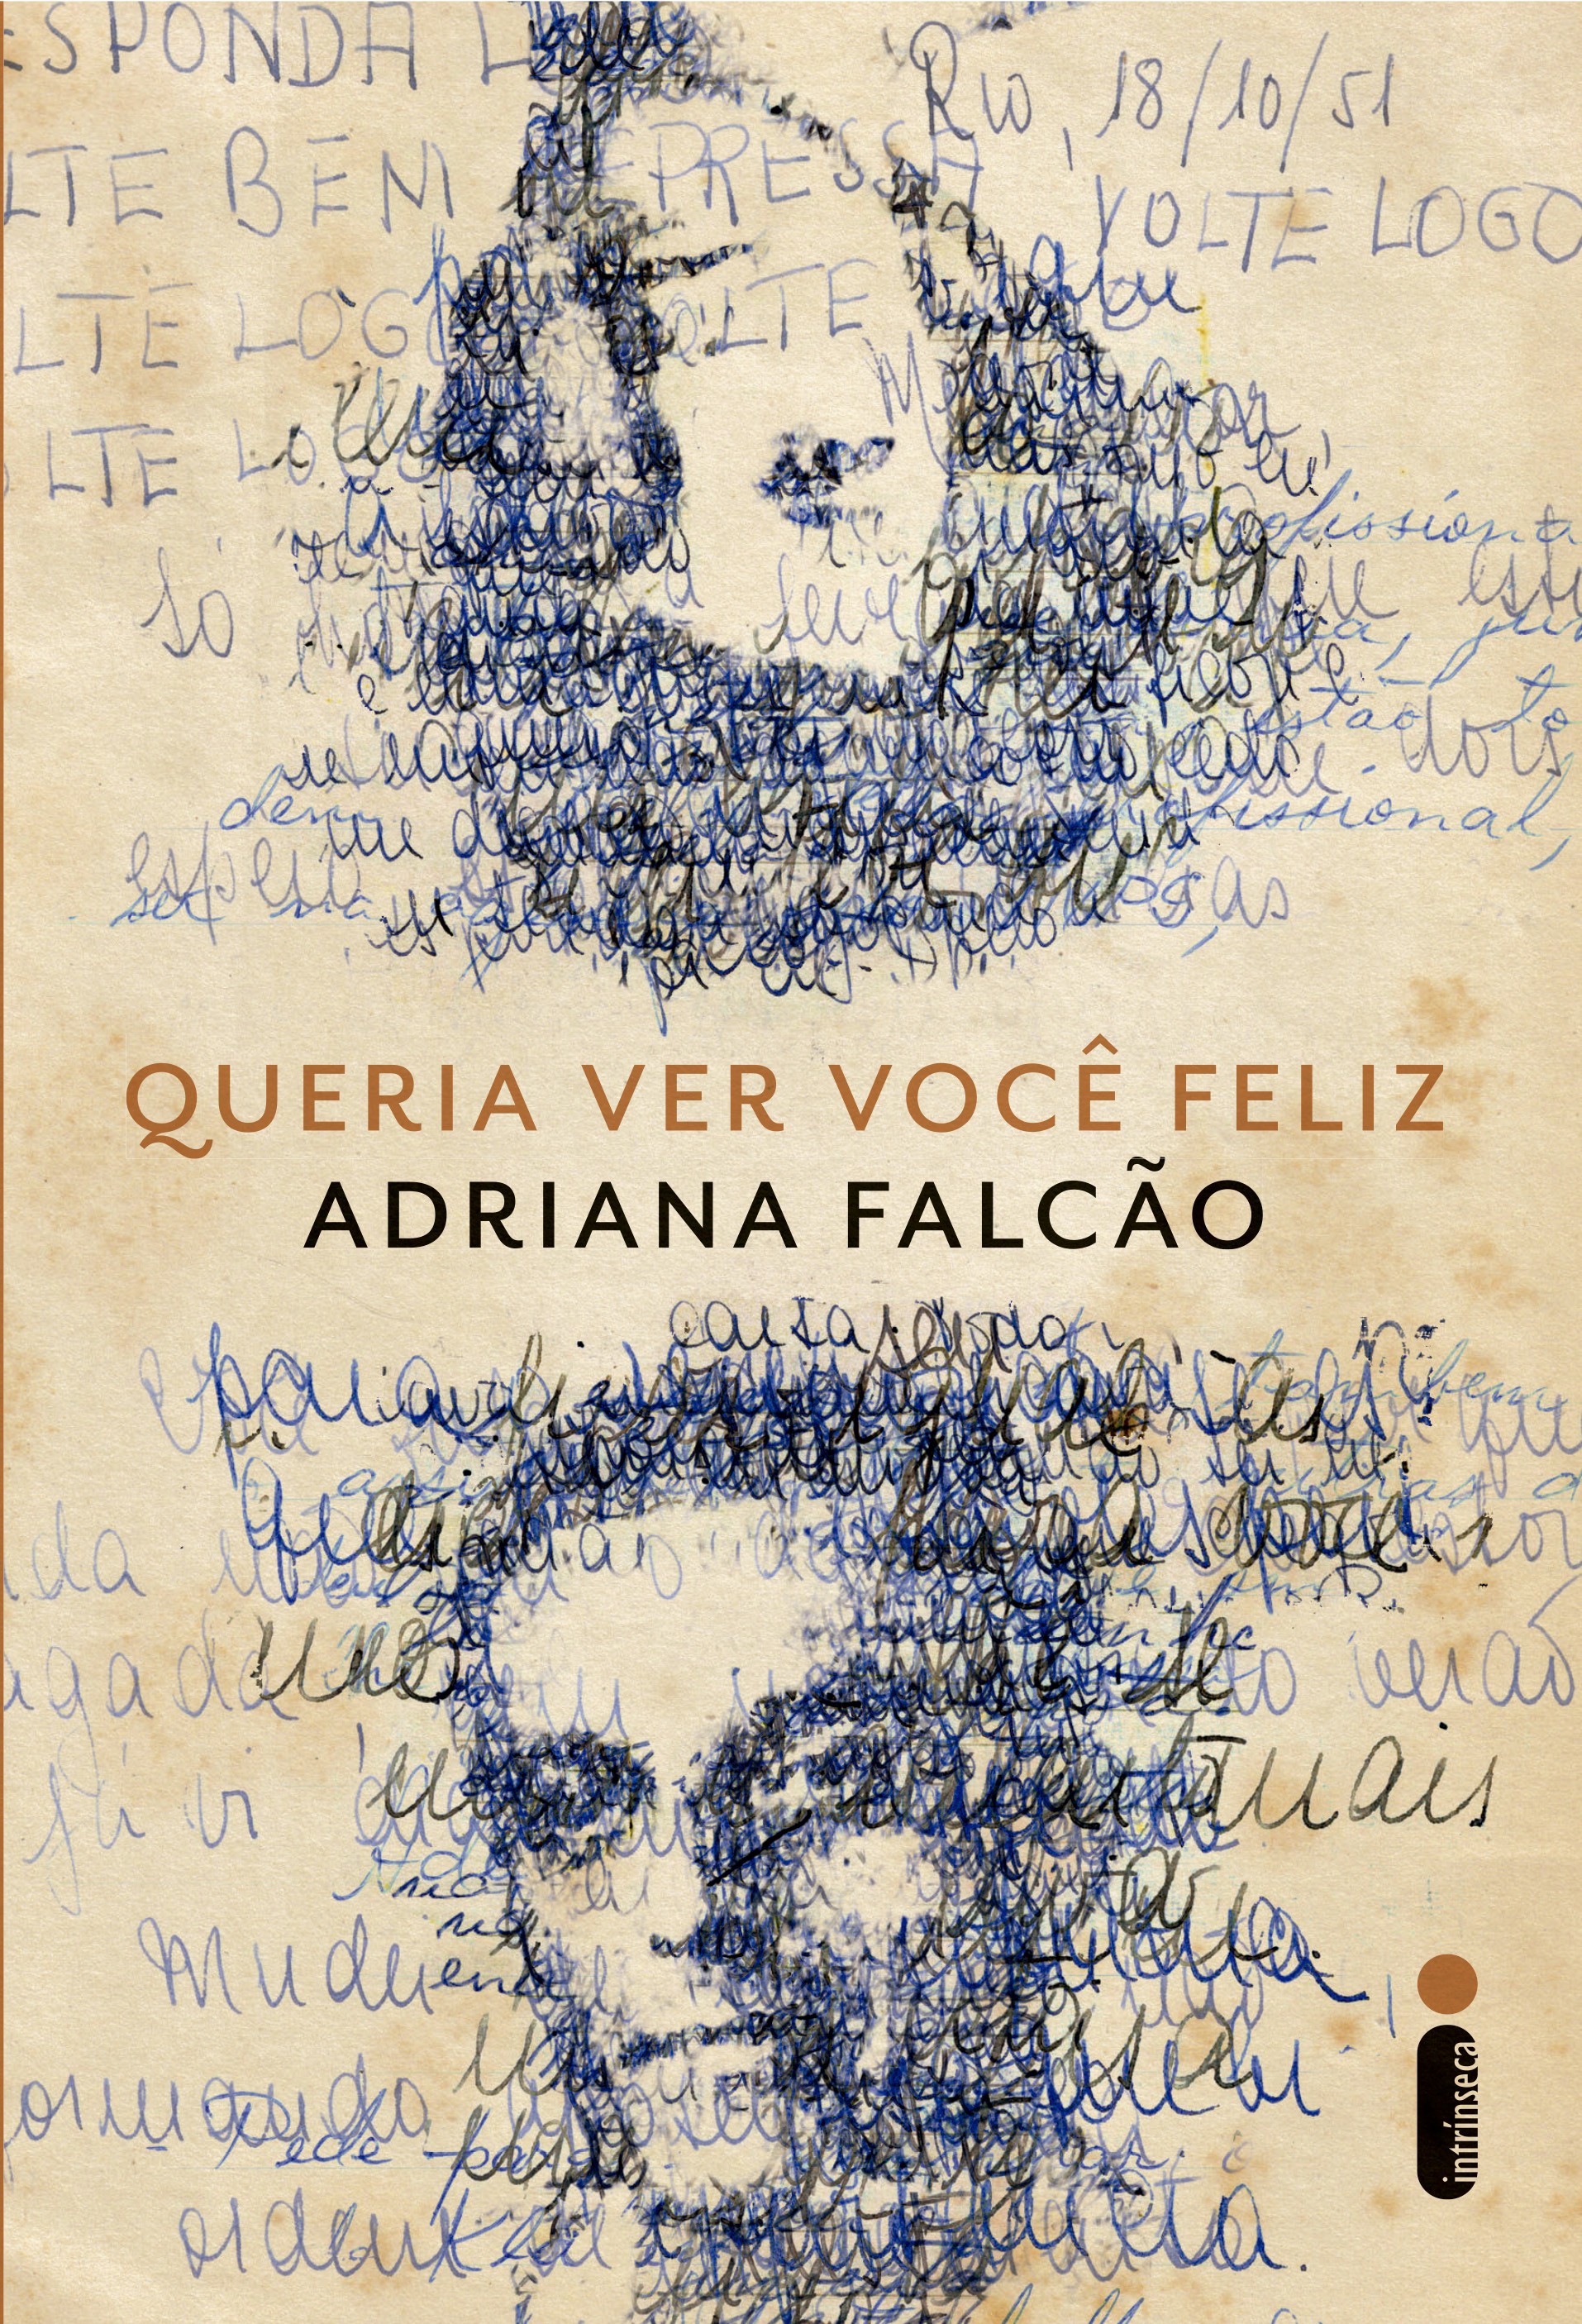 Capa do livro de Adriana Falcão (Foto: Divulgação)